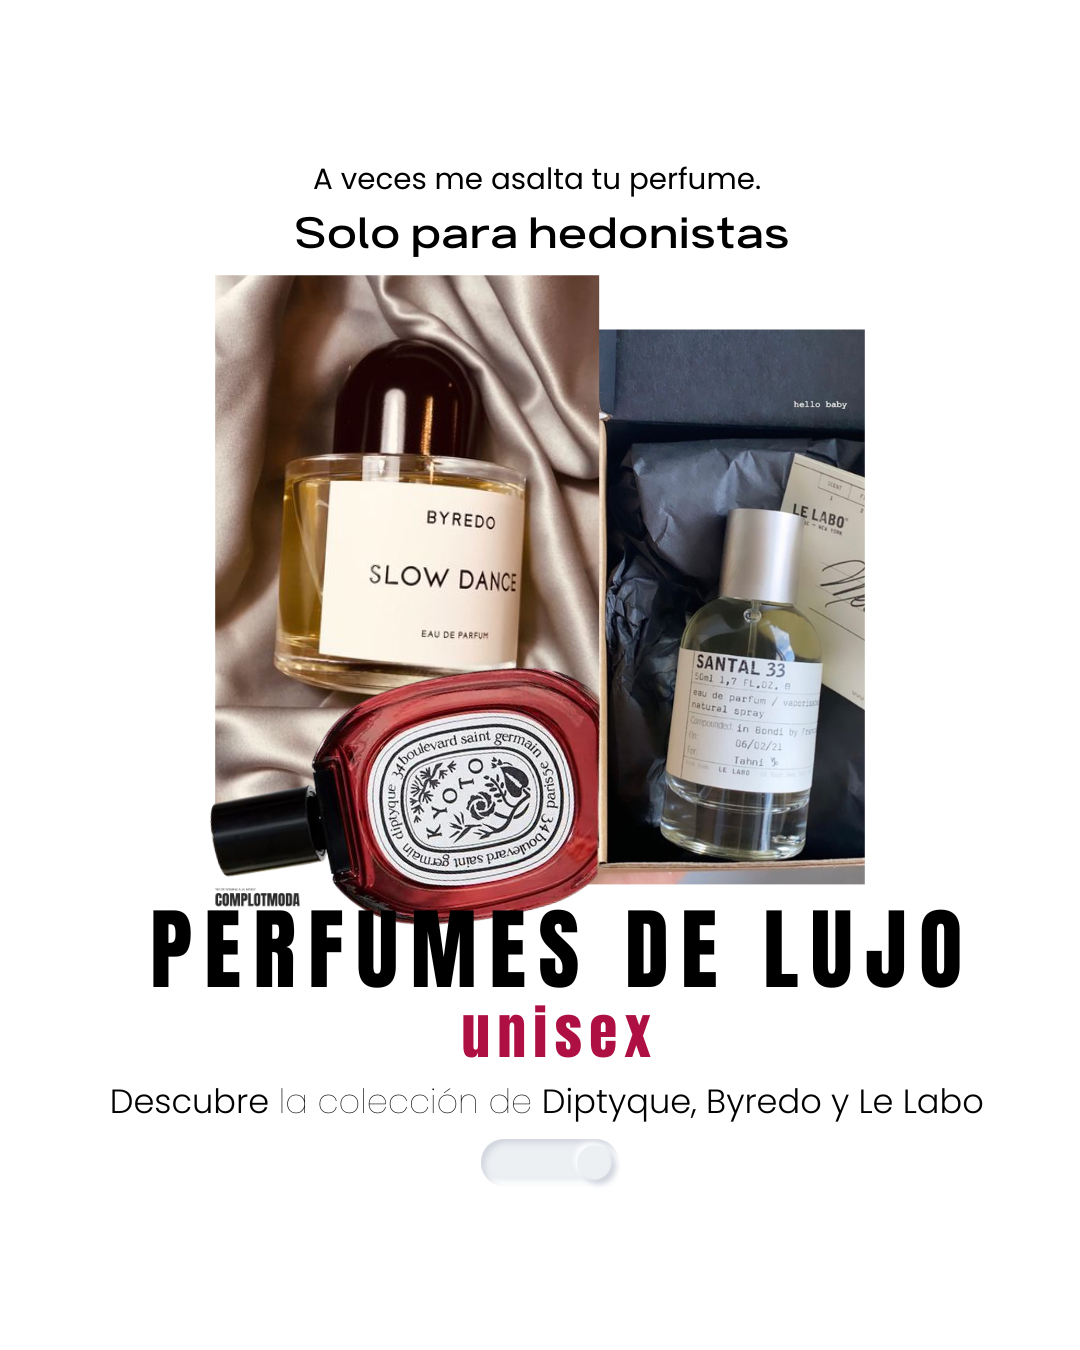 Diptyque, Byredo y Le Labo, perfumes unisex de lujo